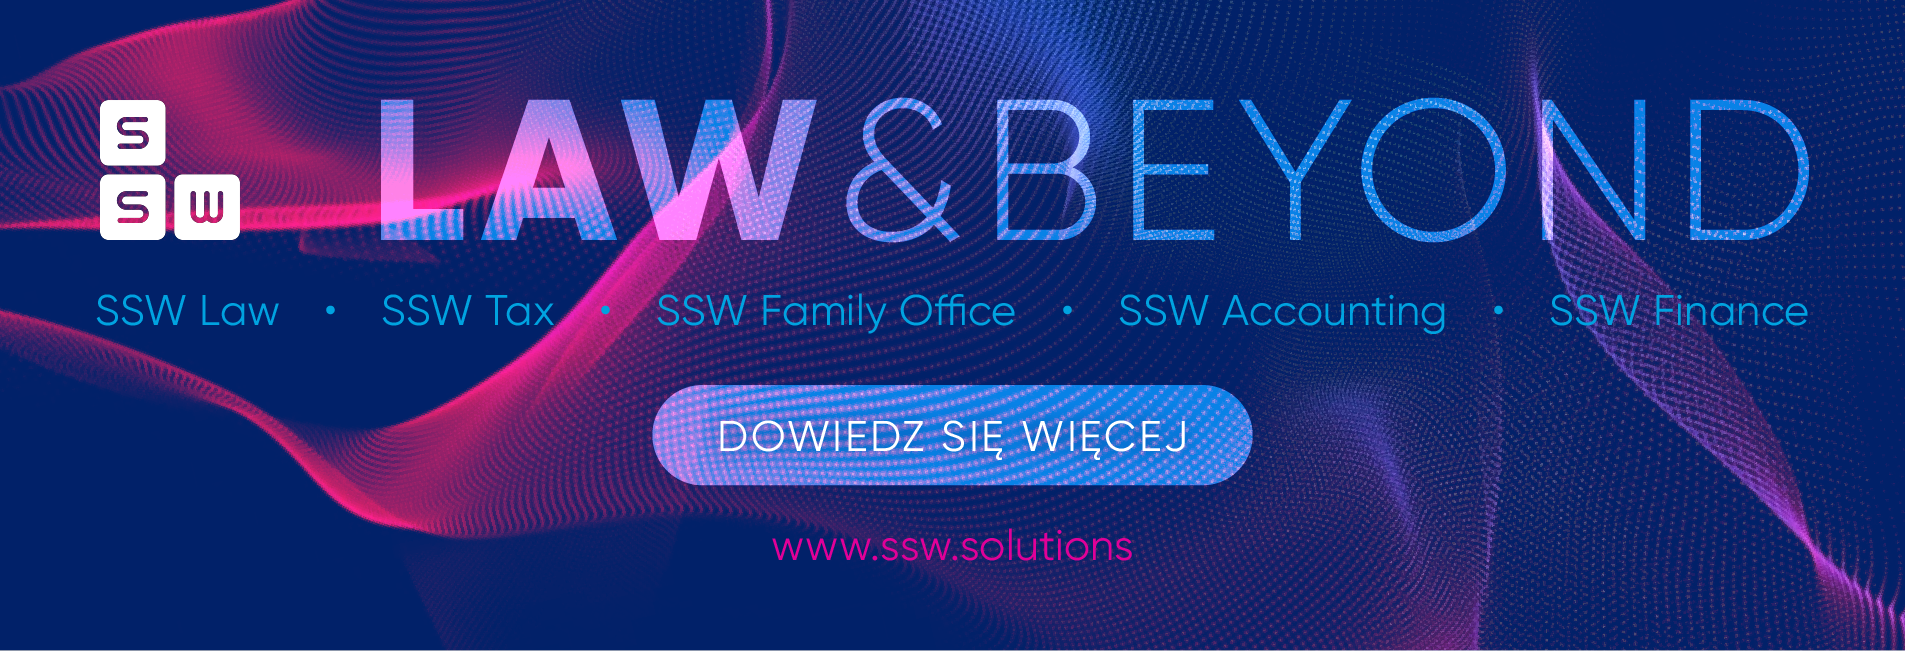 SSW Law